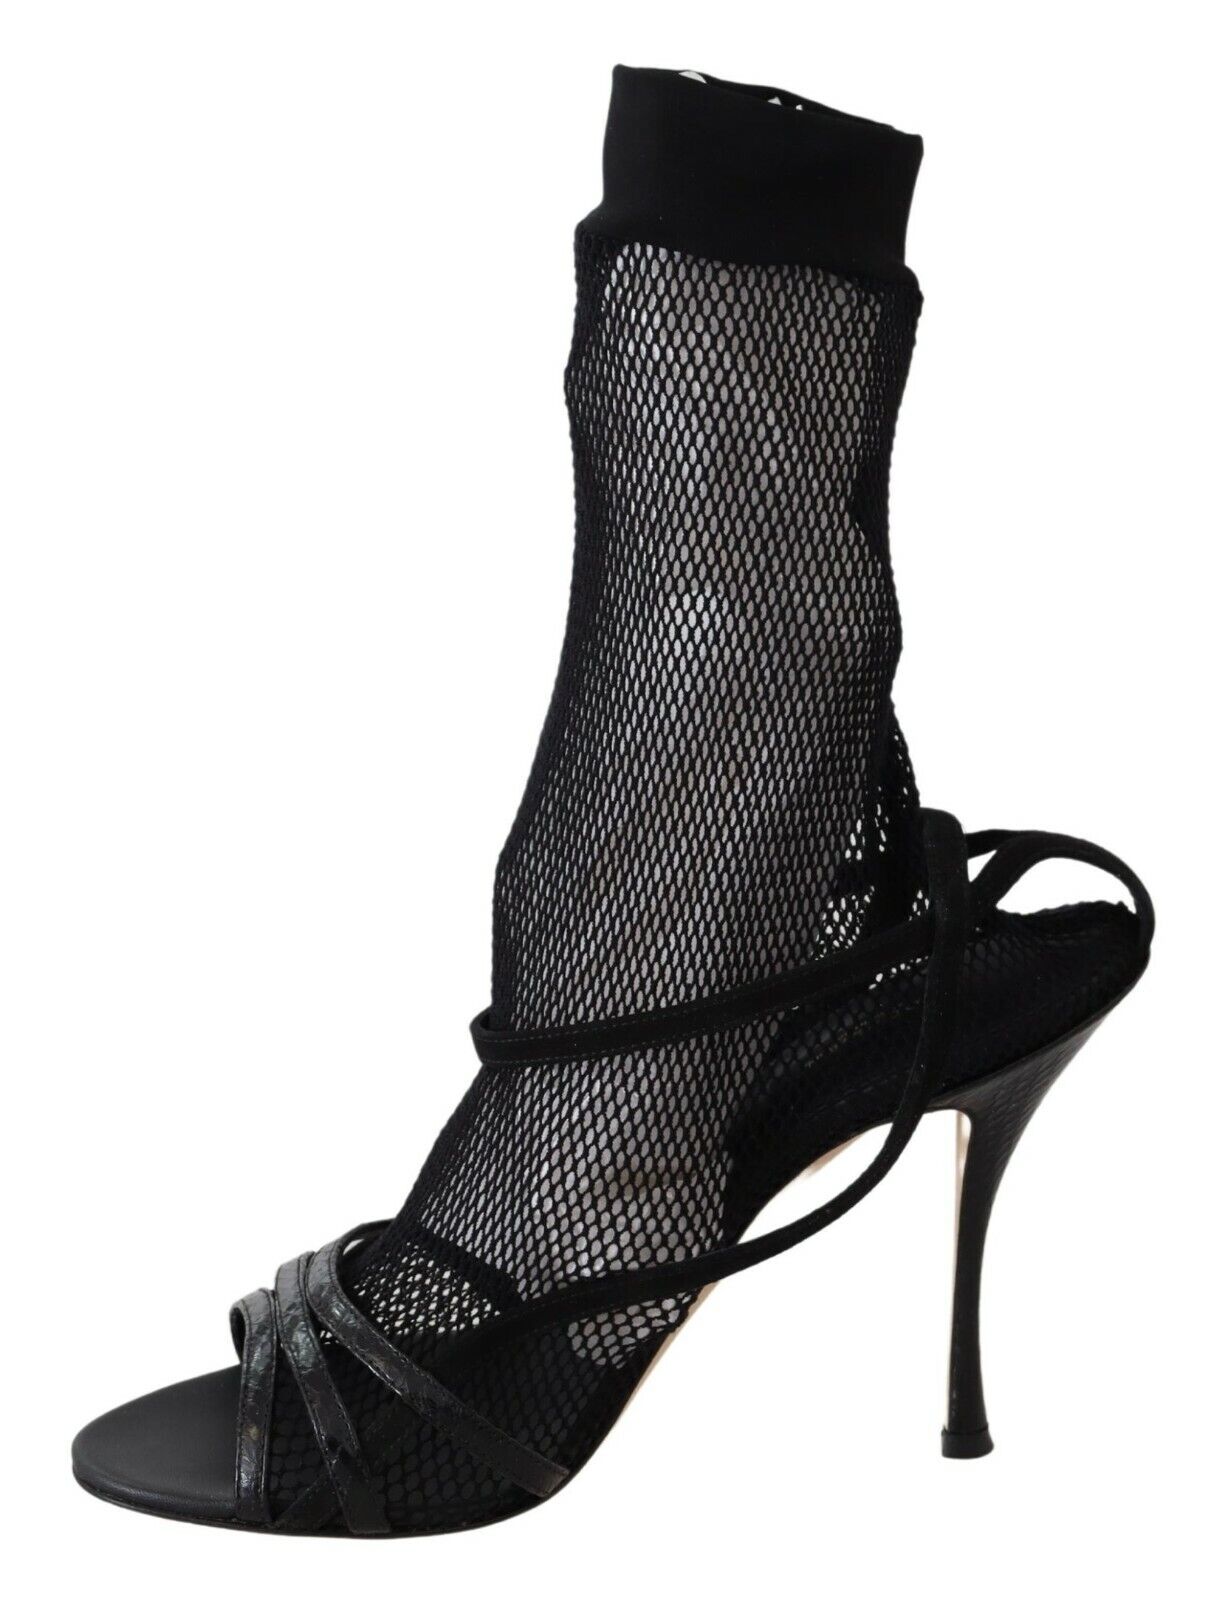 Dolce & Gabbana Black Suede Short Boots Sandals Shoes - DEA STILOSA MILANO